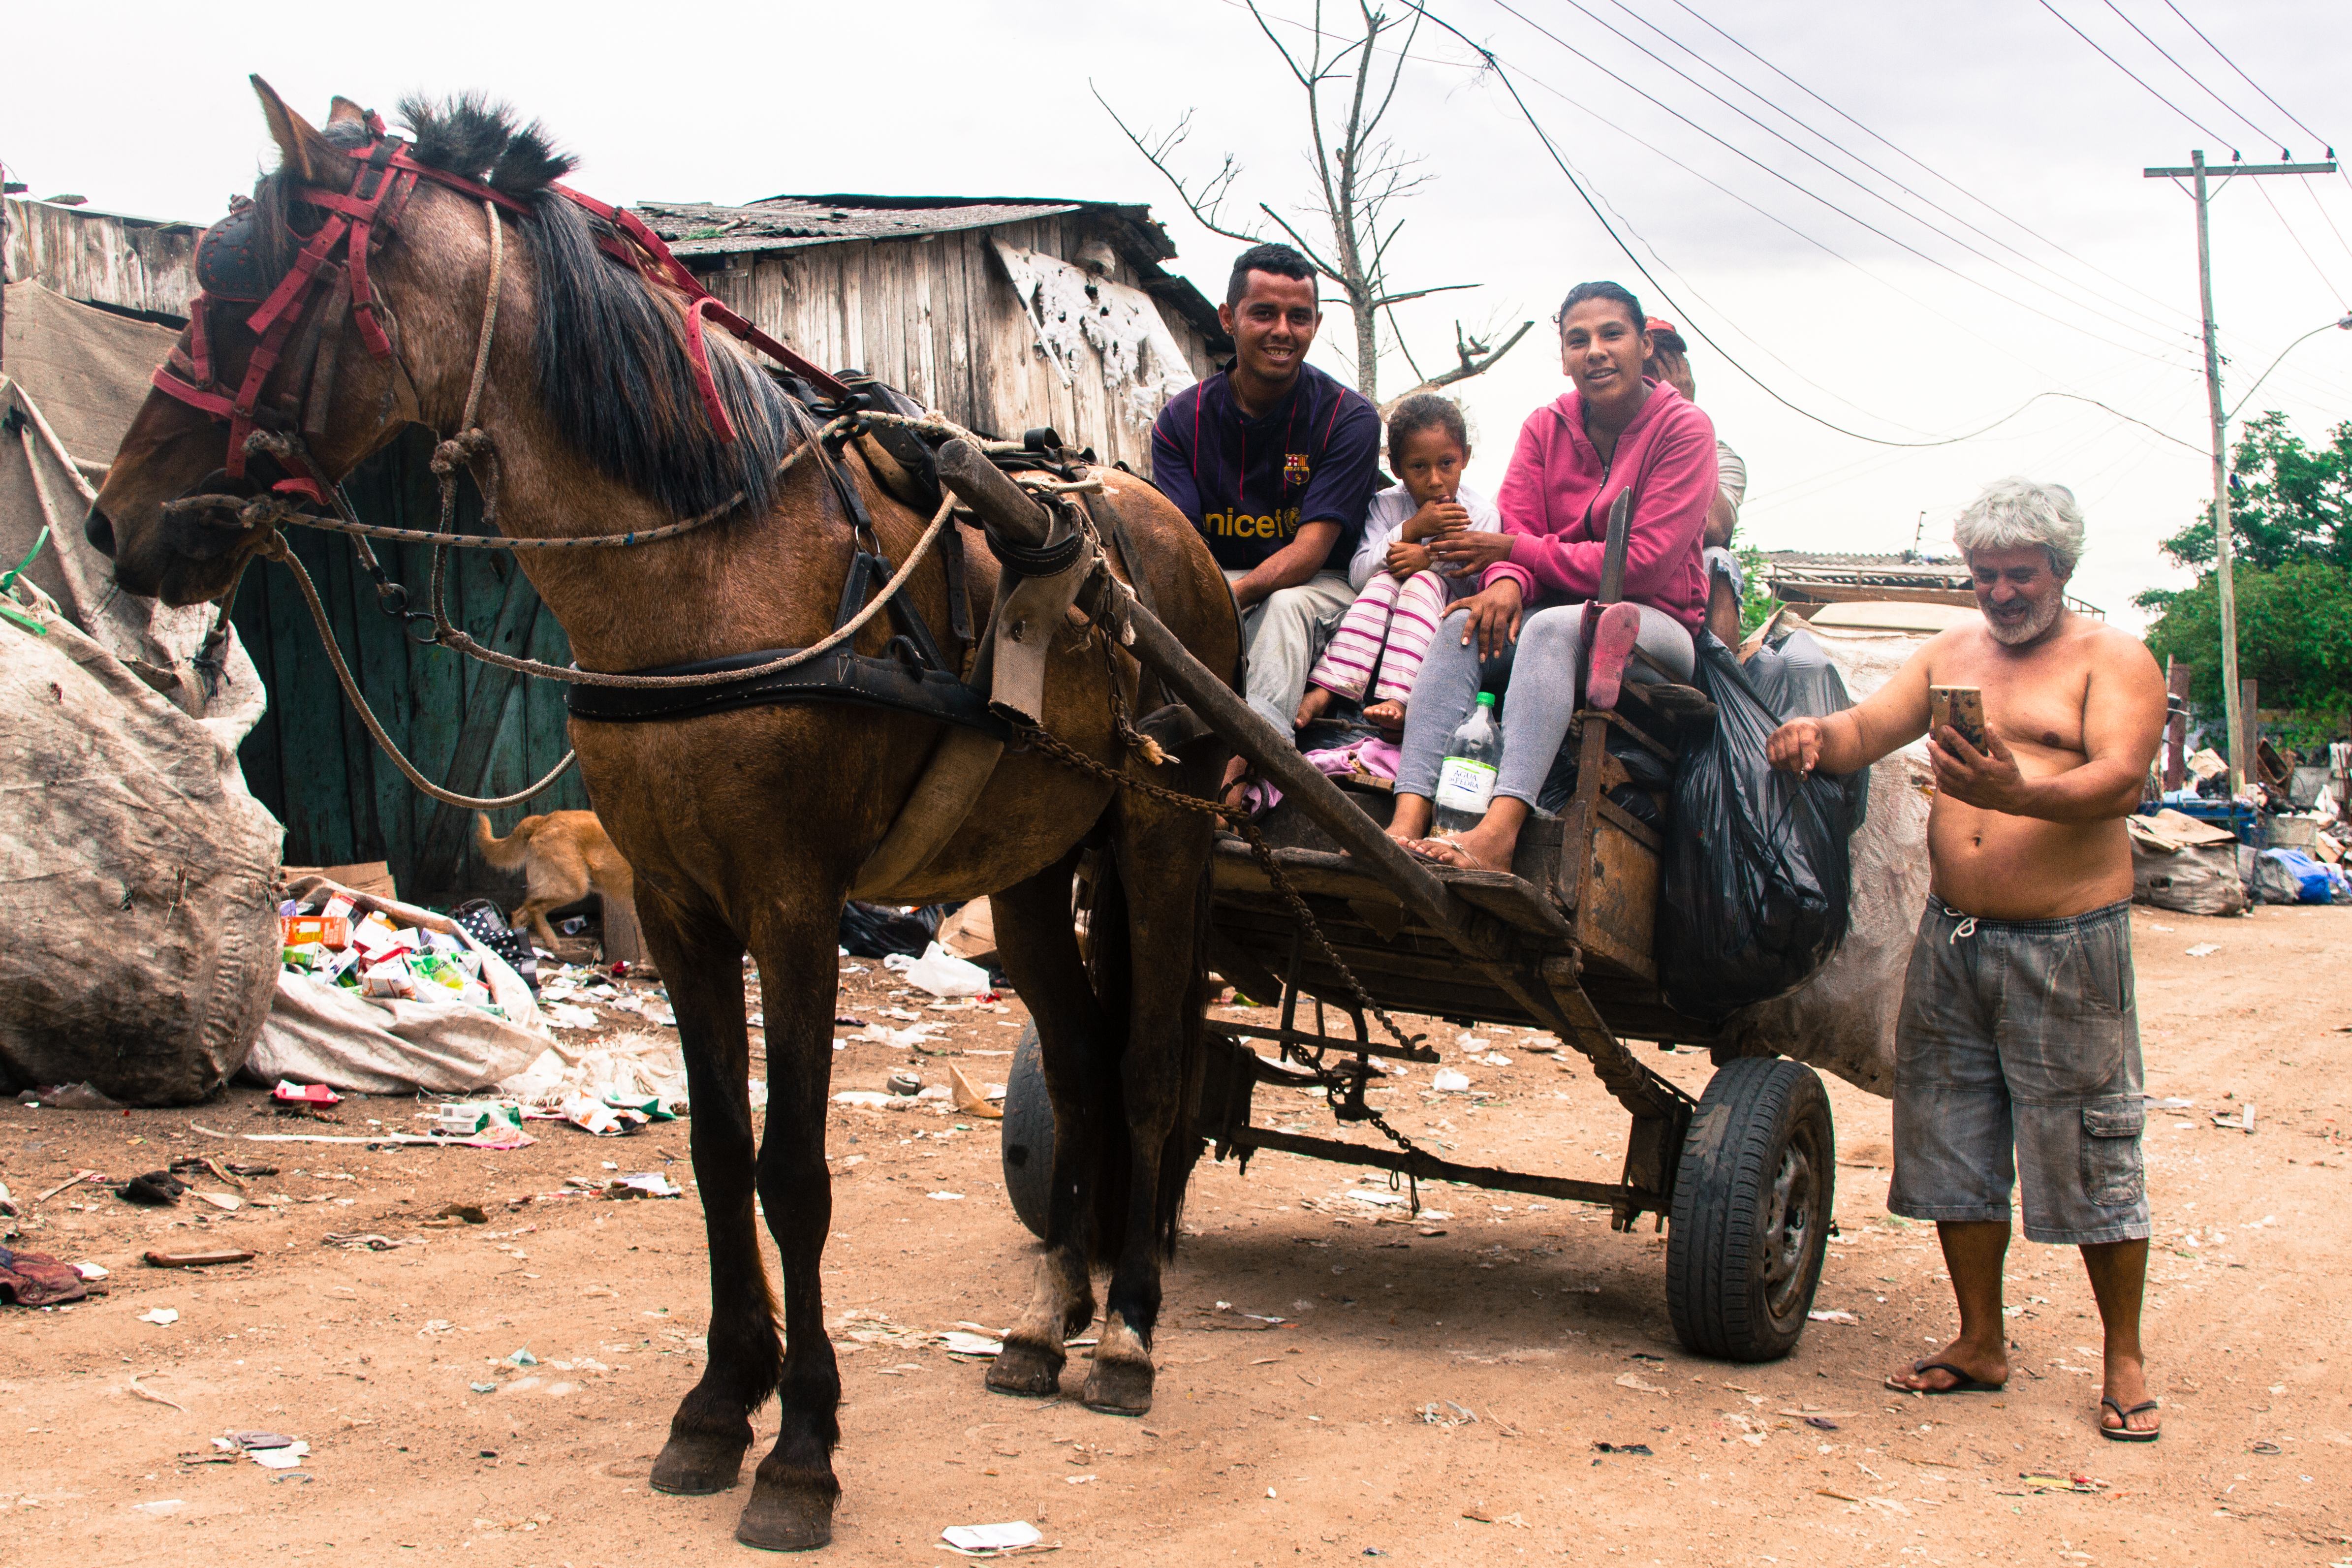  Filhos da dona Ivone e o carroceiro Vavá, afirmam que pretendem continuar na atividade. Foto: Jonas Lunardon 